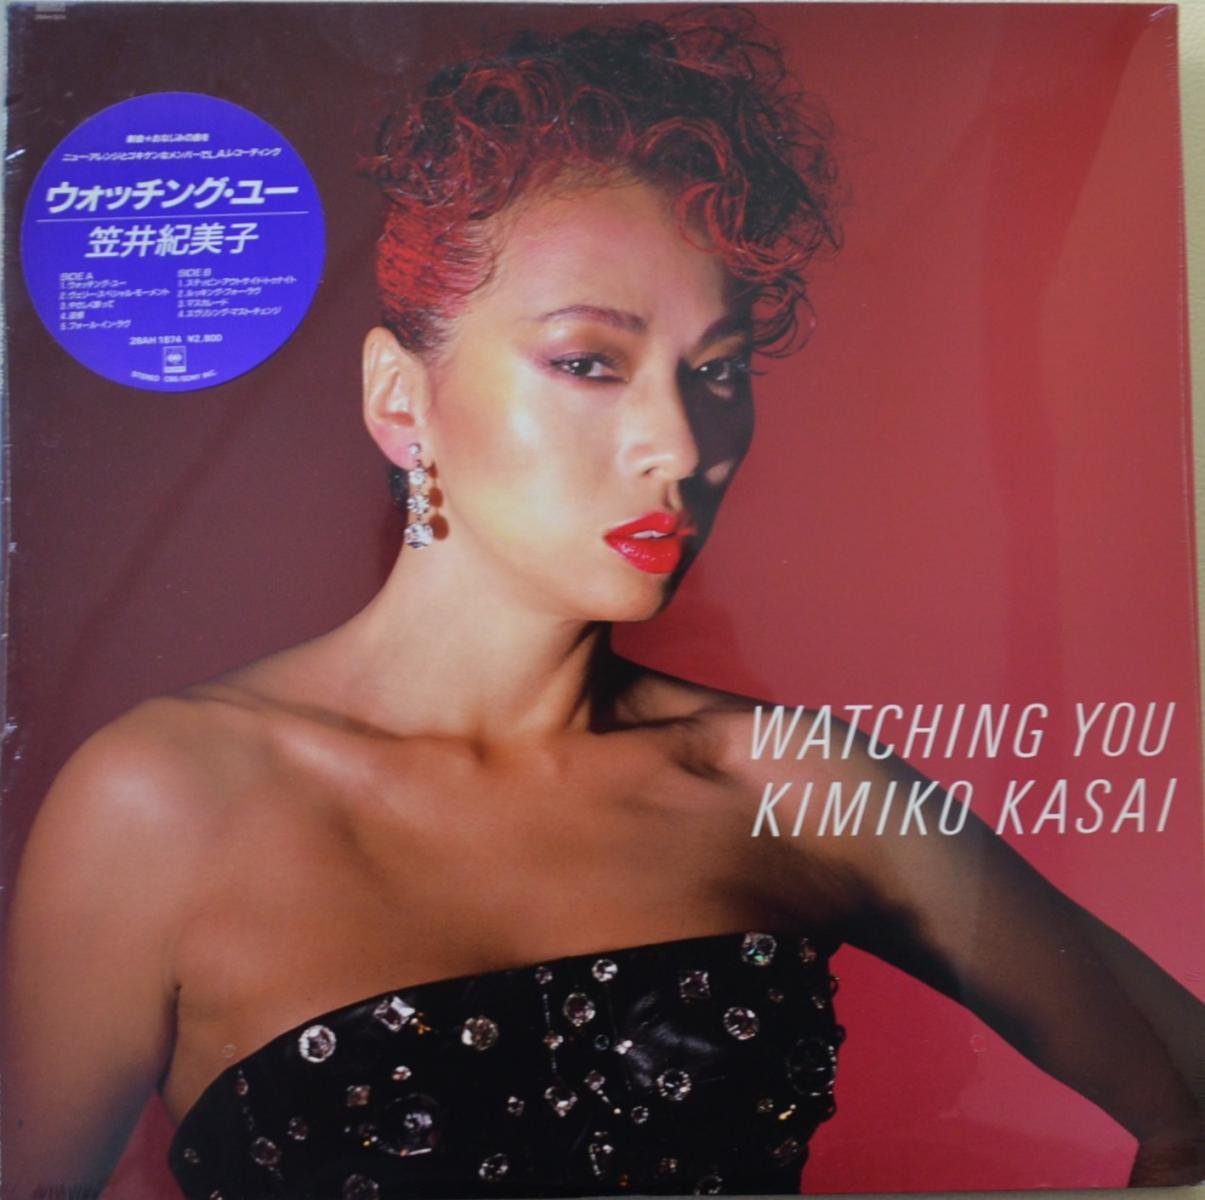 笠井紀美子 KIMIKO KASAI / ウォッチング・ユー WATCHING YOU (LP)